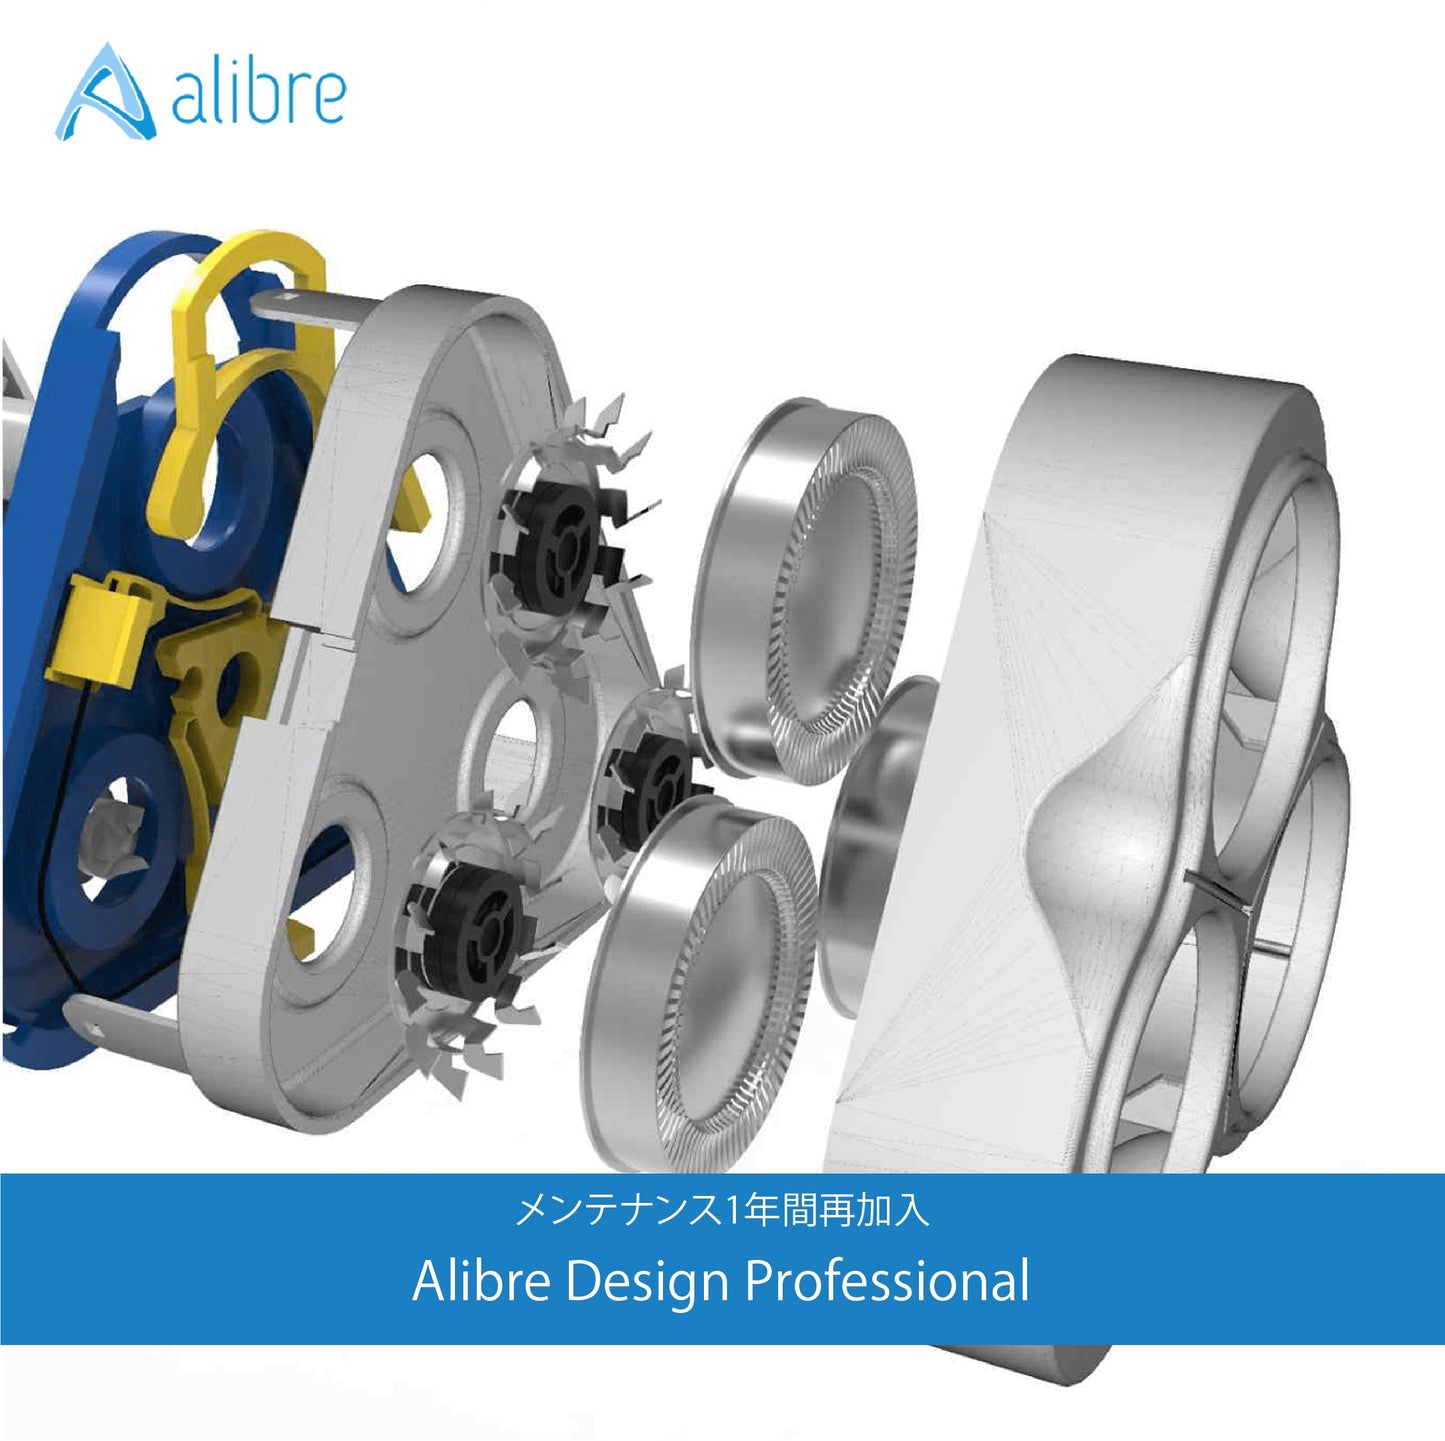 【特別プロモーション価格｜メール納品のみ】Alibre Design Professional メンテナンス1年間再加入